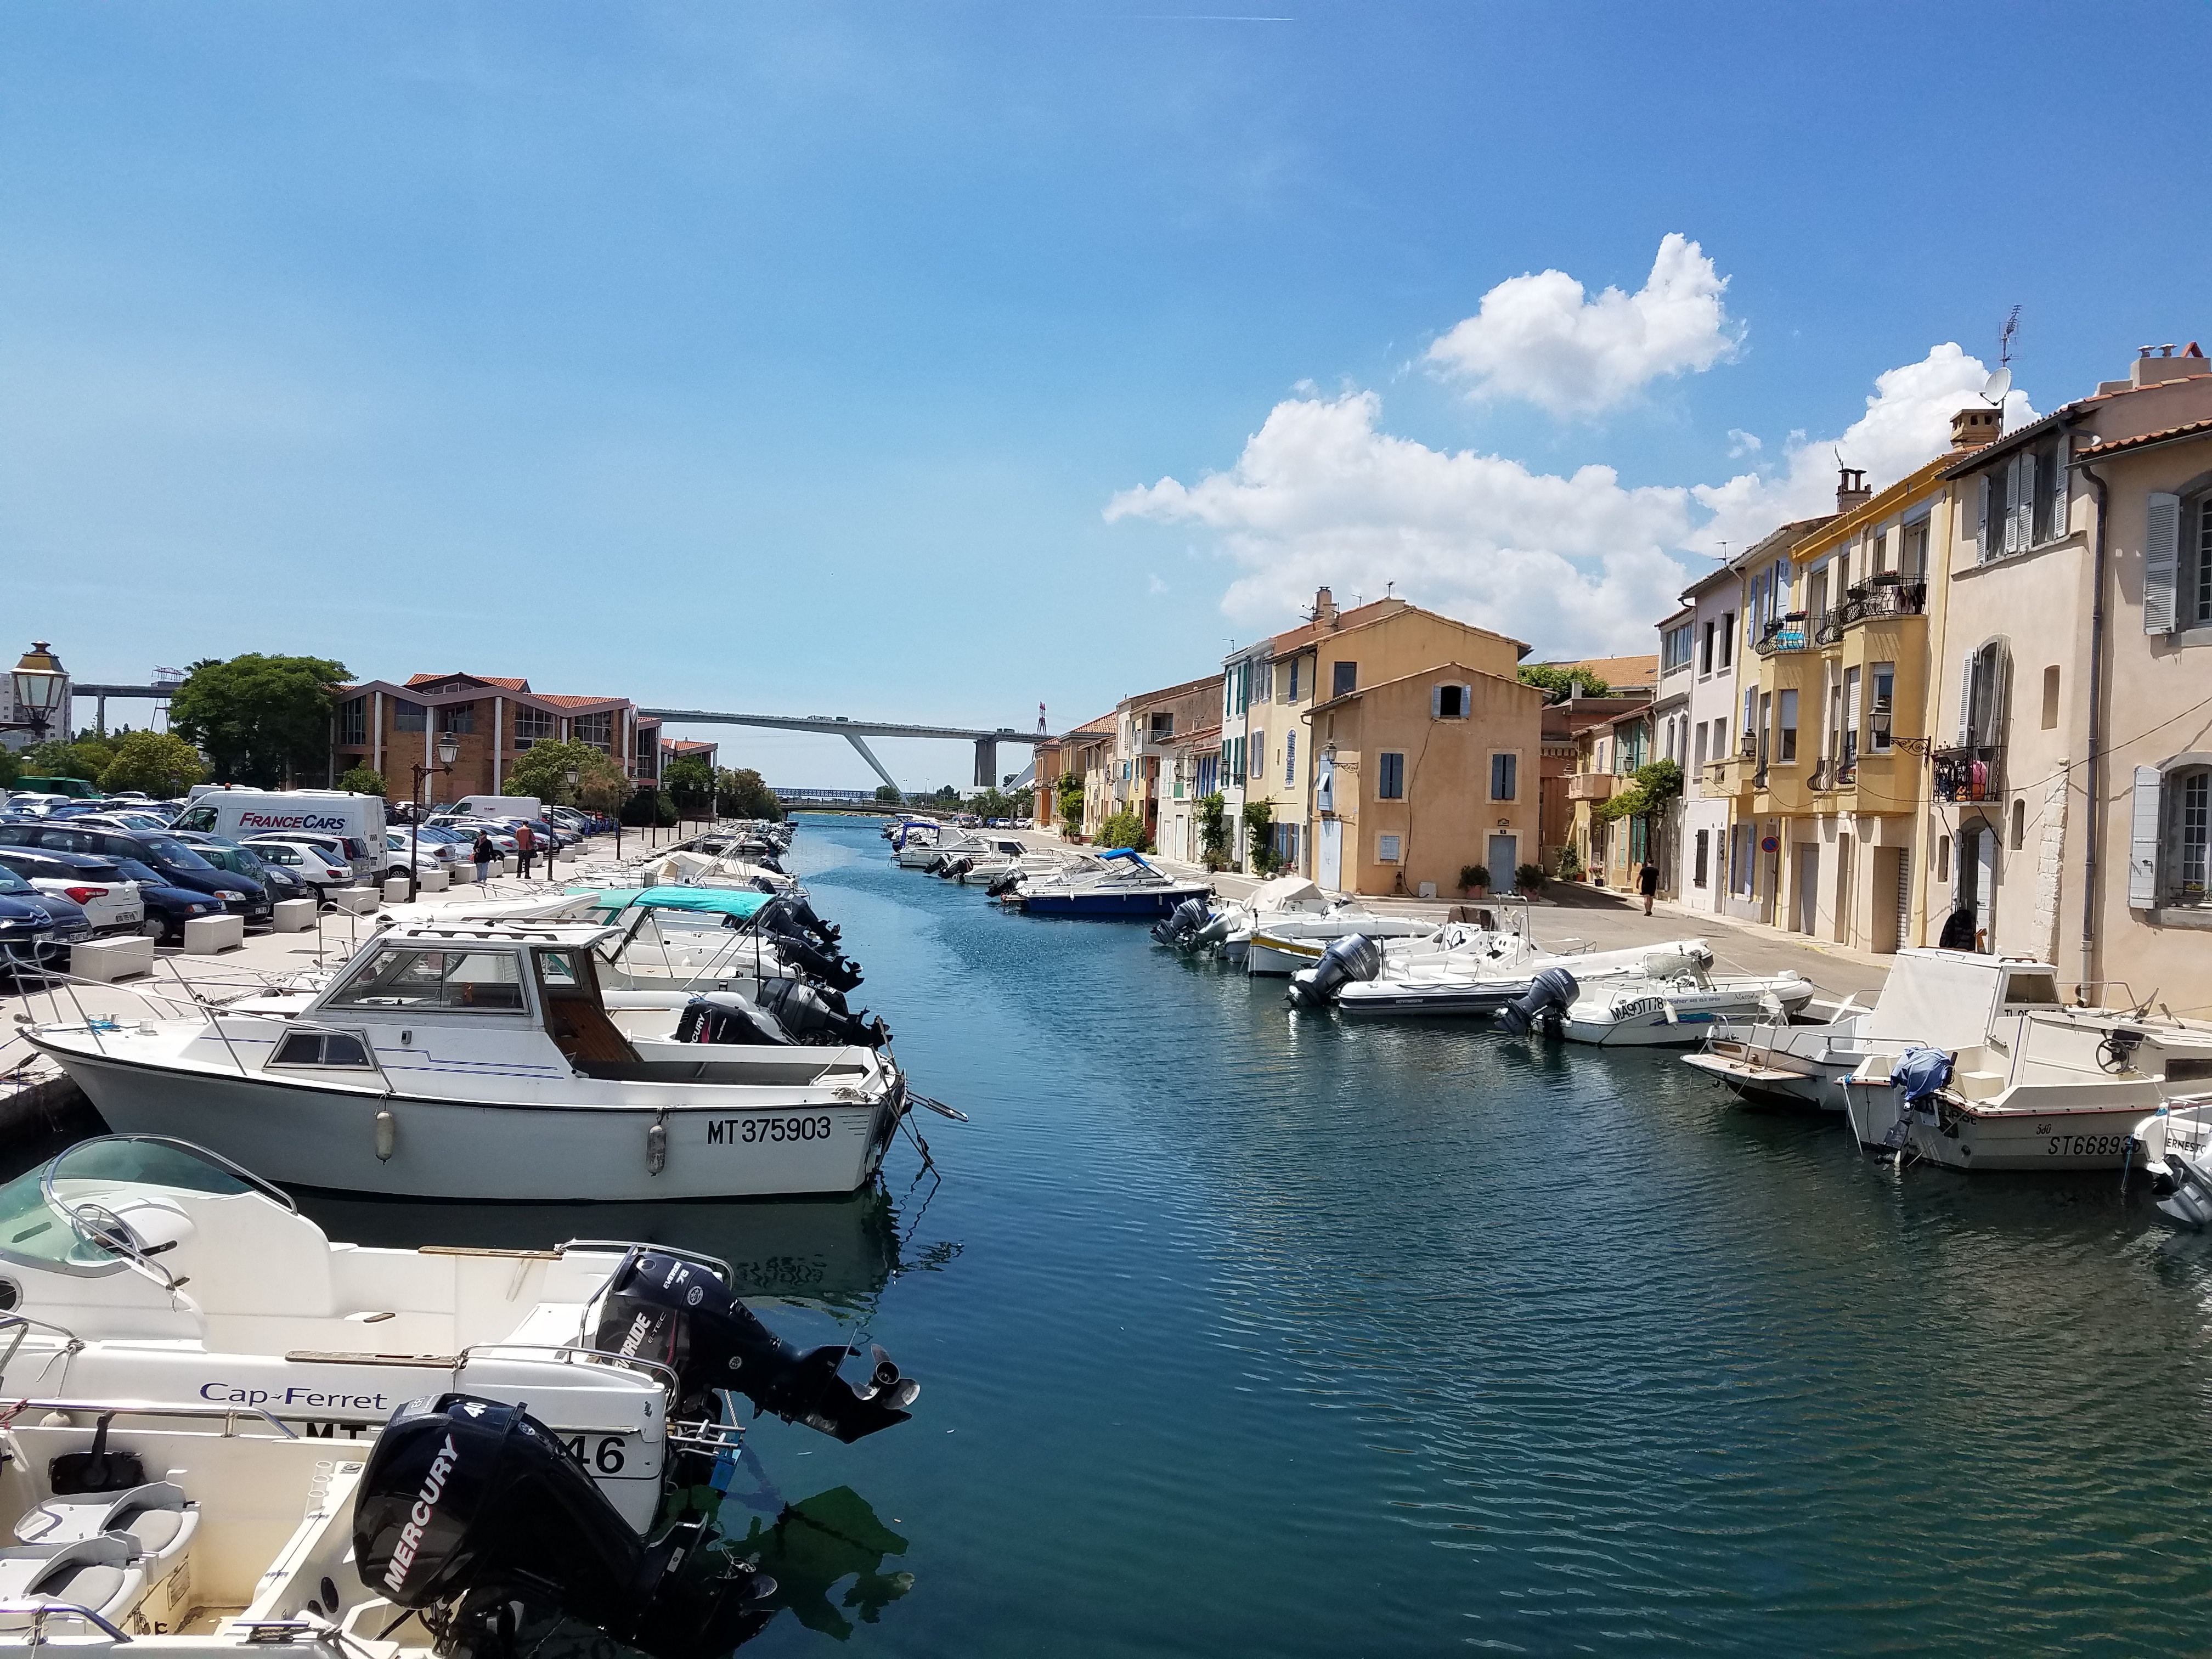 Le quartier de l'Ile, Martigues et son canal - © Otmartigues / MyriamF